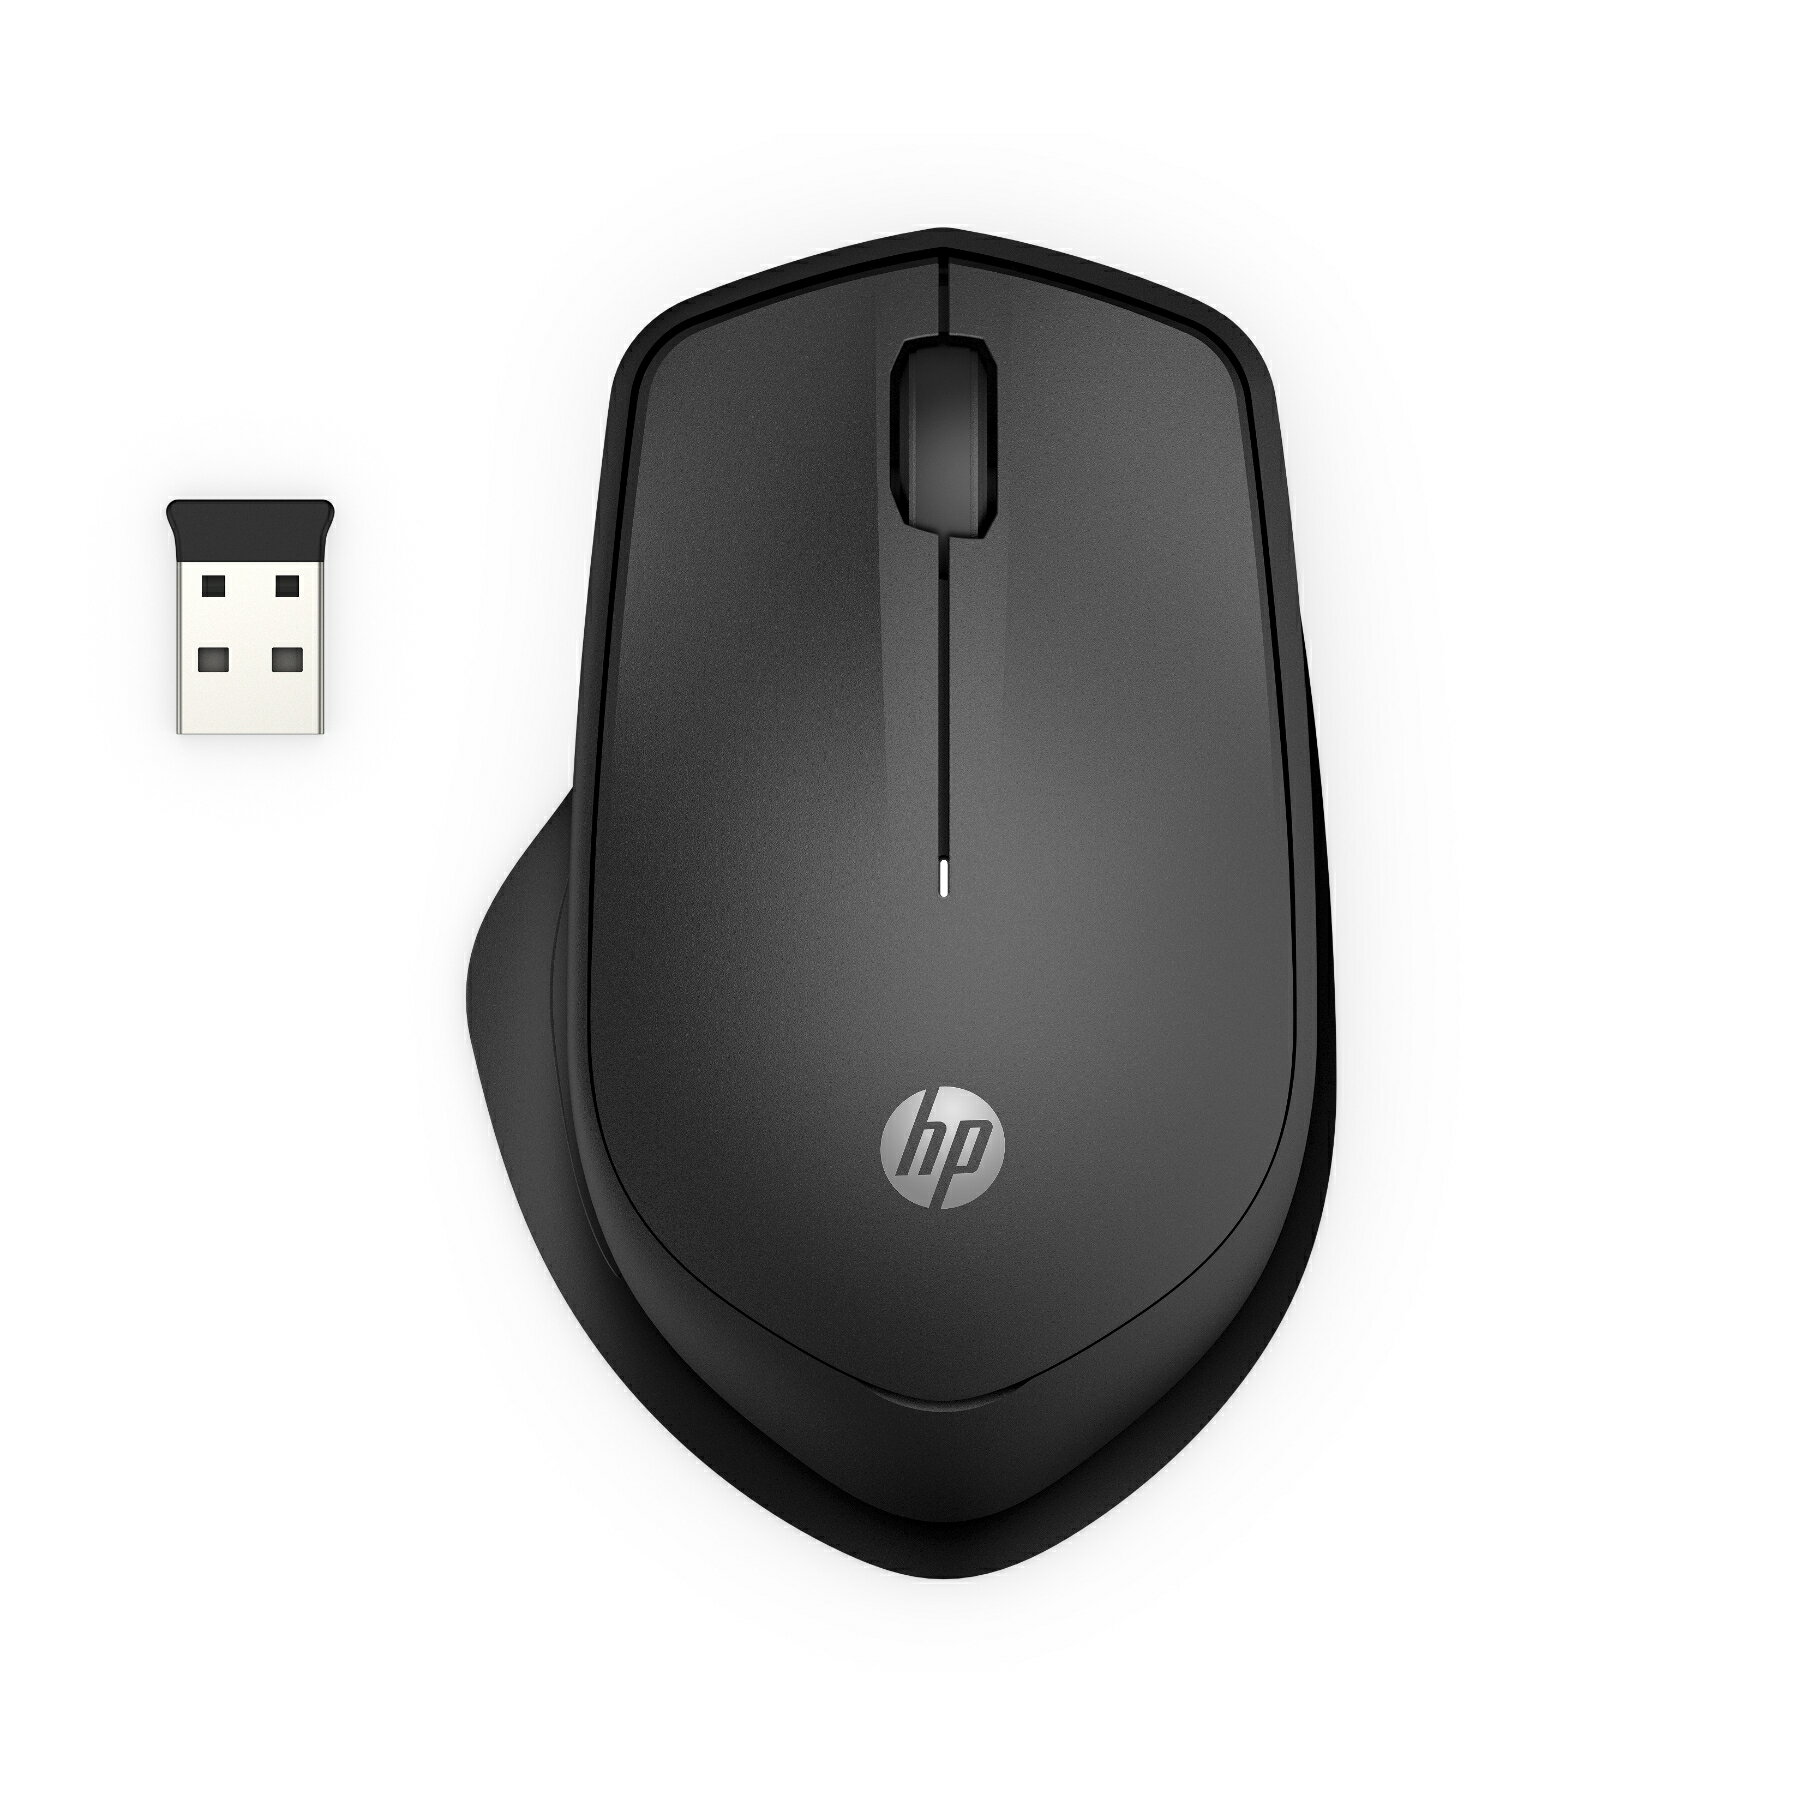 【HP公式】HP マウス 静音クリック BlueLED 無線